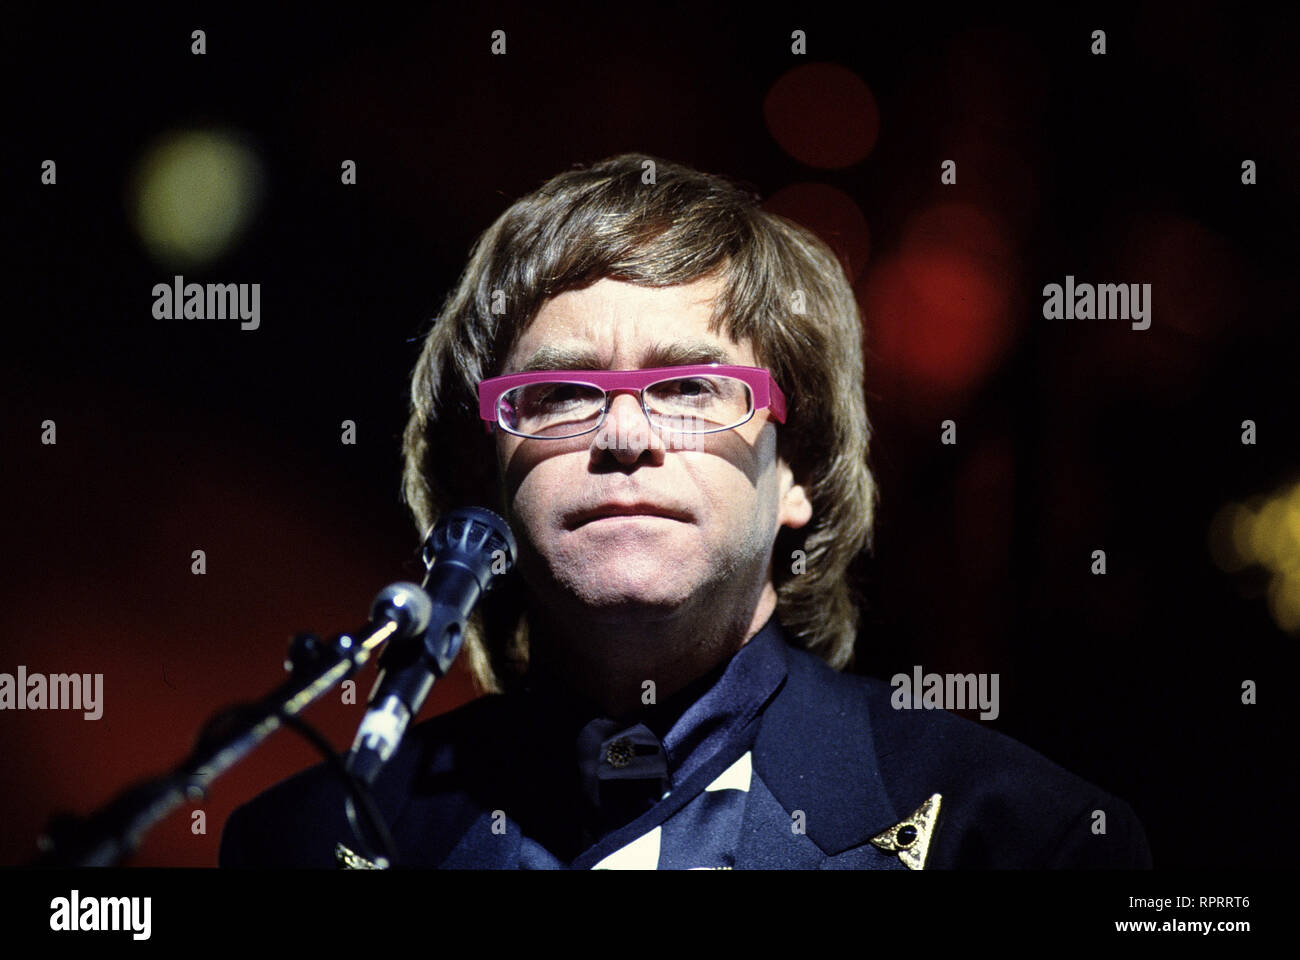 ELTON JOHN wurde am 25. März 1947 in Pinner in Middlesex geboren. Elton John und sein Texter Bernie Tauping sind das erfolgreichste Songwriter-Duo. Elton John ist seit den 70er Jahren einer der erfolgreichsten Rockmusiker. 1971 landete er gleich fünf LPs in den US-Hitparaden. Zu den grÜßten Erfolgen des Sängers und Pianisten zählen Songs wie: 'Rocket Man', 'Blues Eyes' oder 'I'm Still Standing'. Elton John ist auch als Kunstsammler und Mäzen bekannt. 2000 erhielt er einen Ehren-Grammy für sein Werk. Foto: 1995 / Überschrift: Elton John Stock Photo